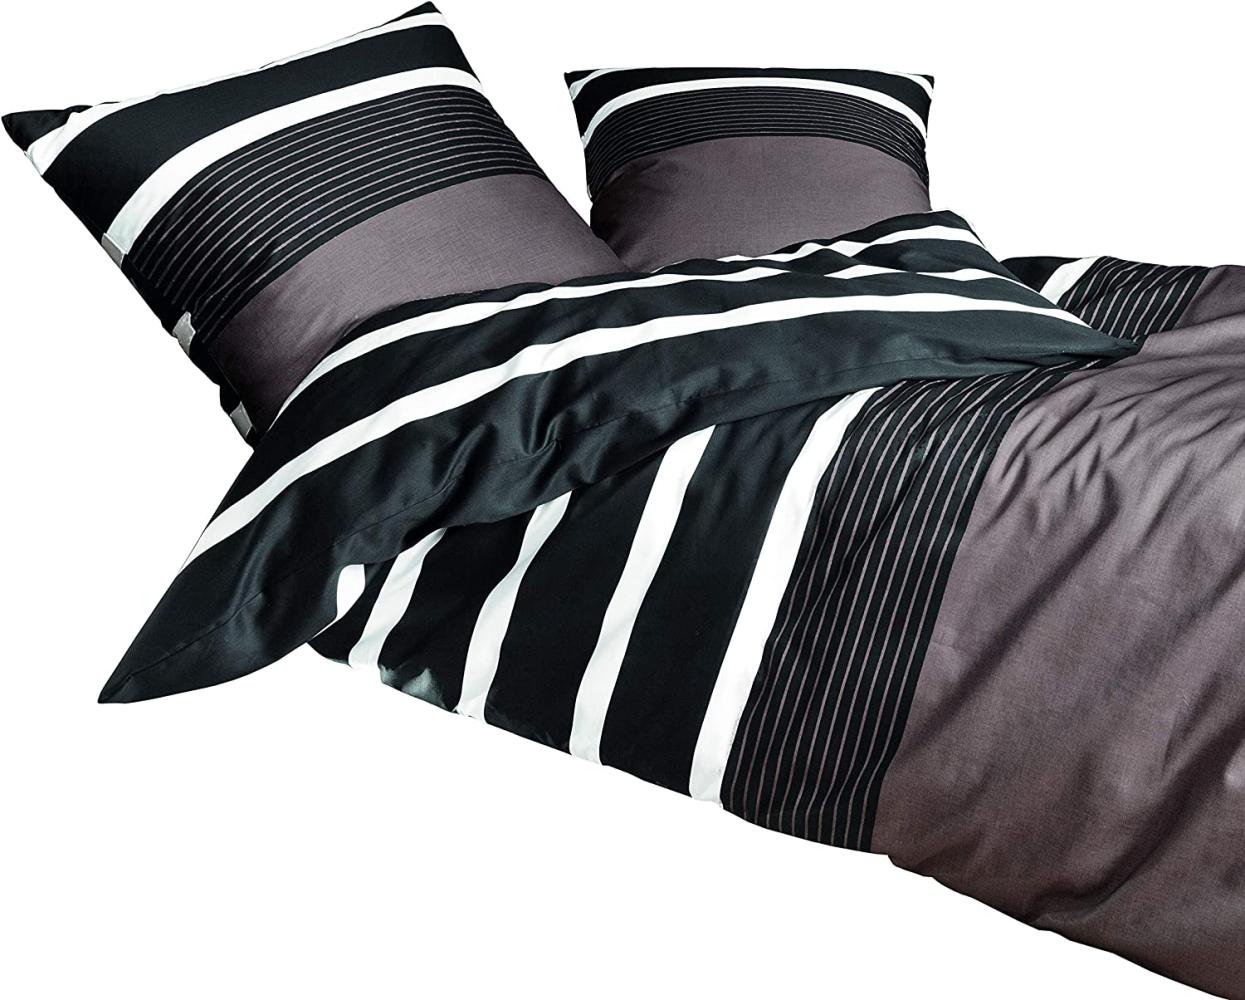 Janine Mako Satin Bettwäsche 4 teilig Bettbezug 135 x 200 cm Kopfkissenbezug 80 x 80 cm Streifen Nougat schwarz Bild 1